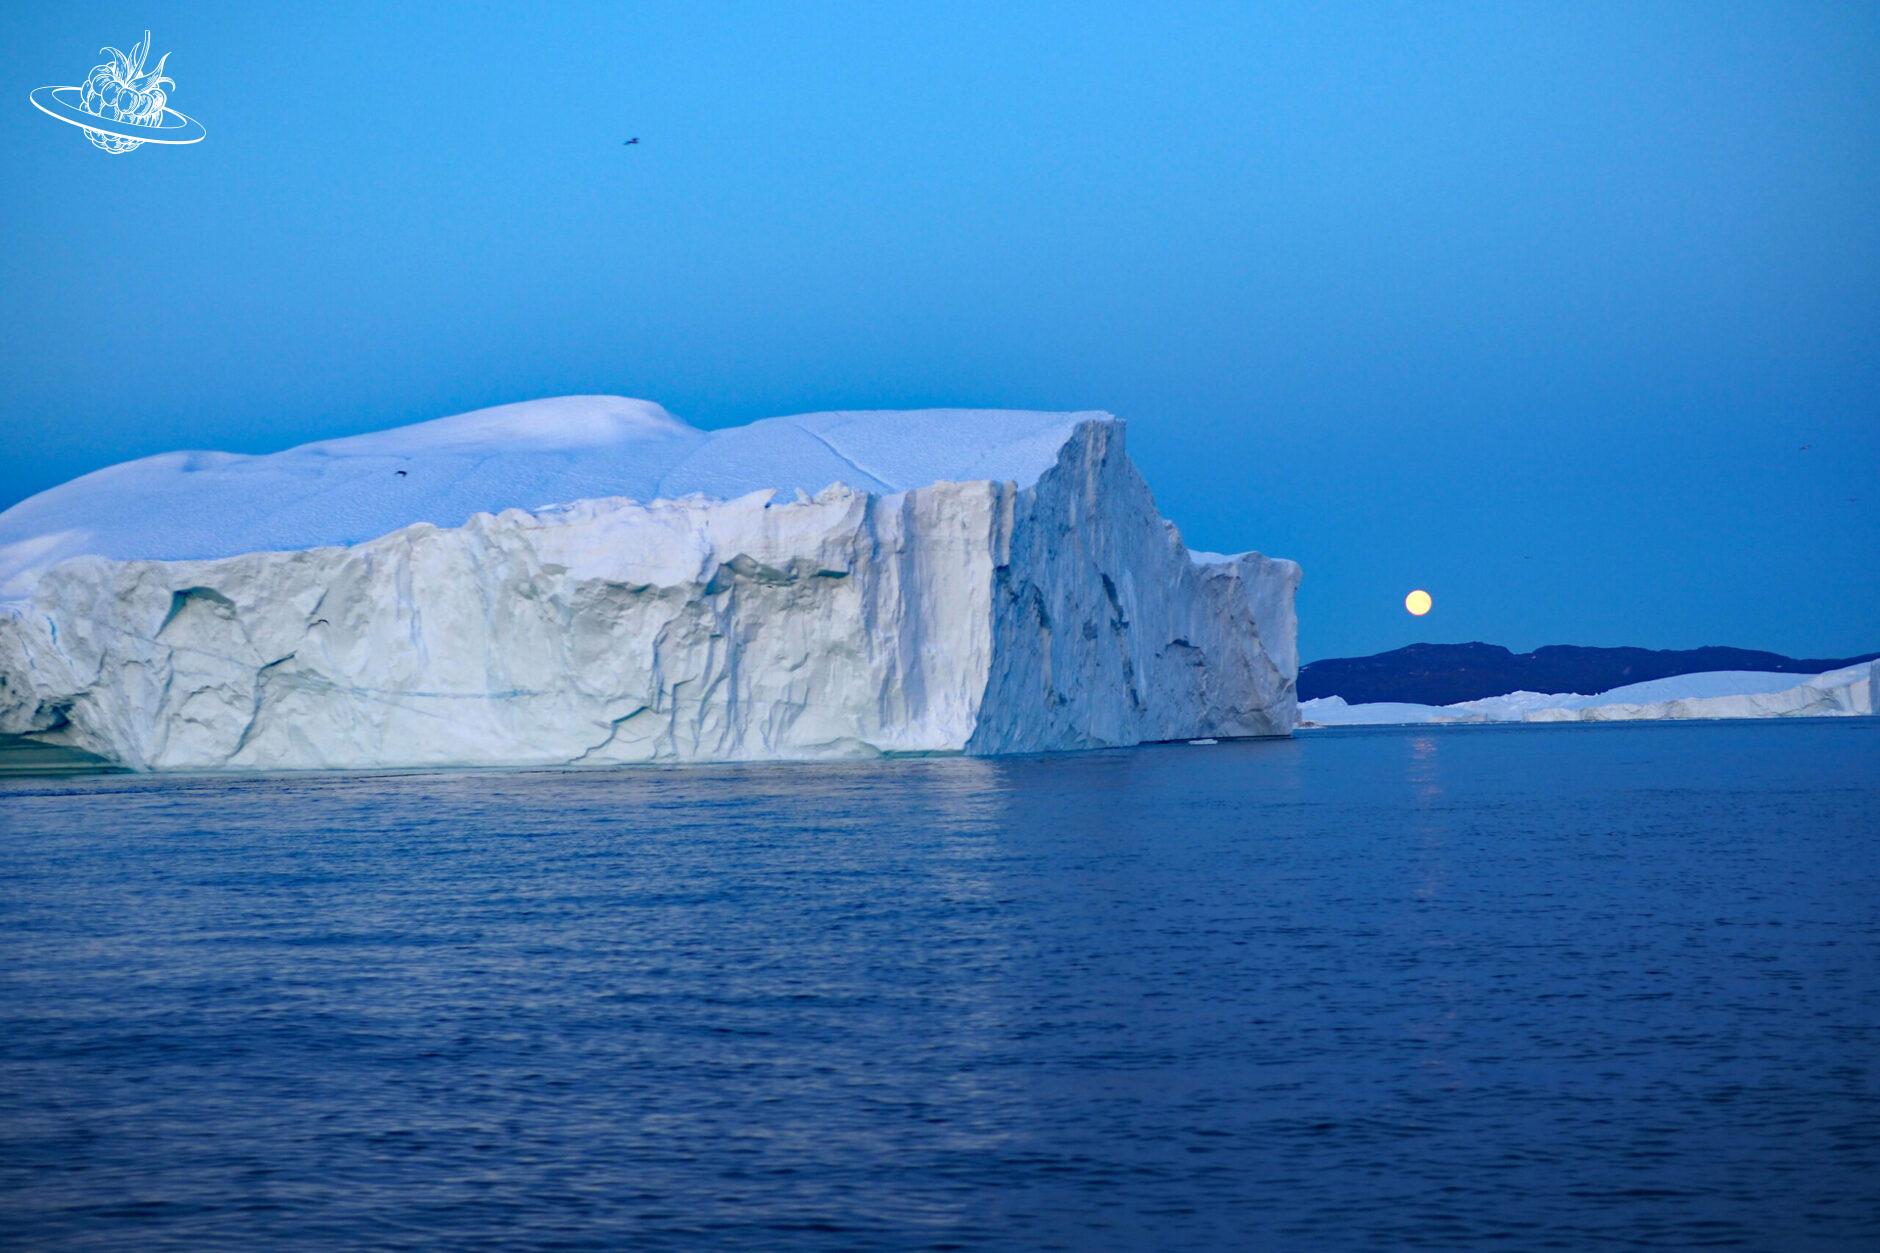 grosser Eisberg und im Hintergrund der Vollmond, welcher über das Meer scheint